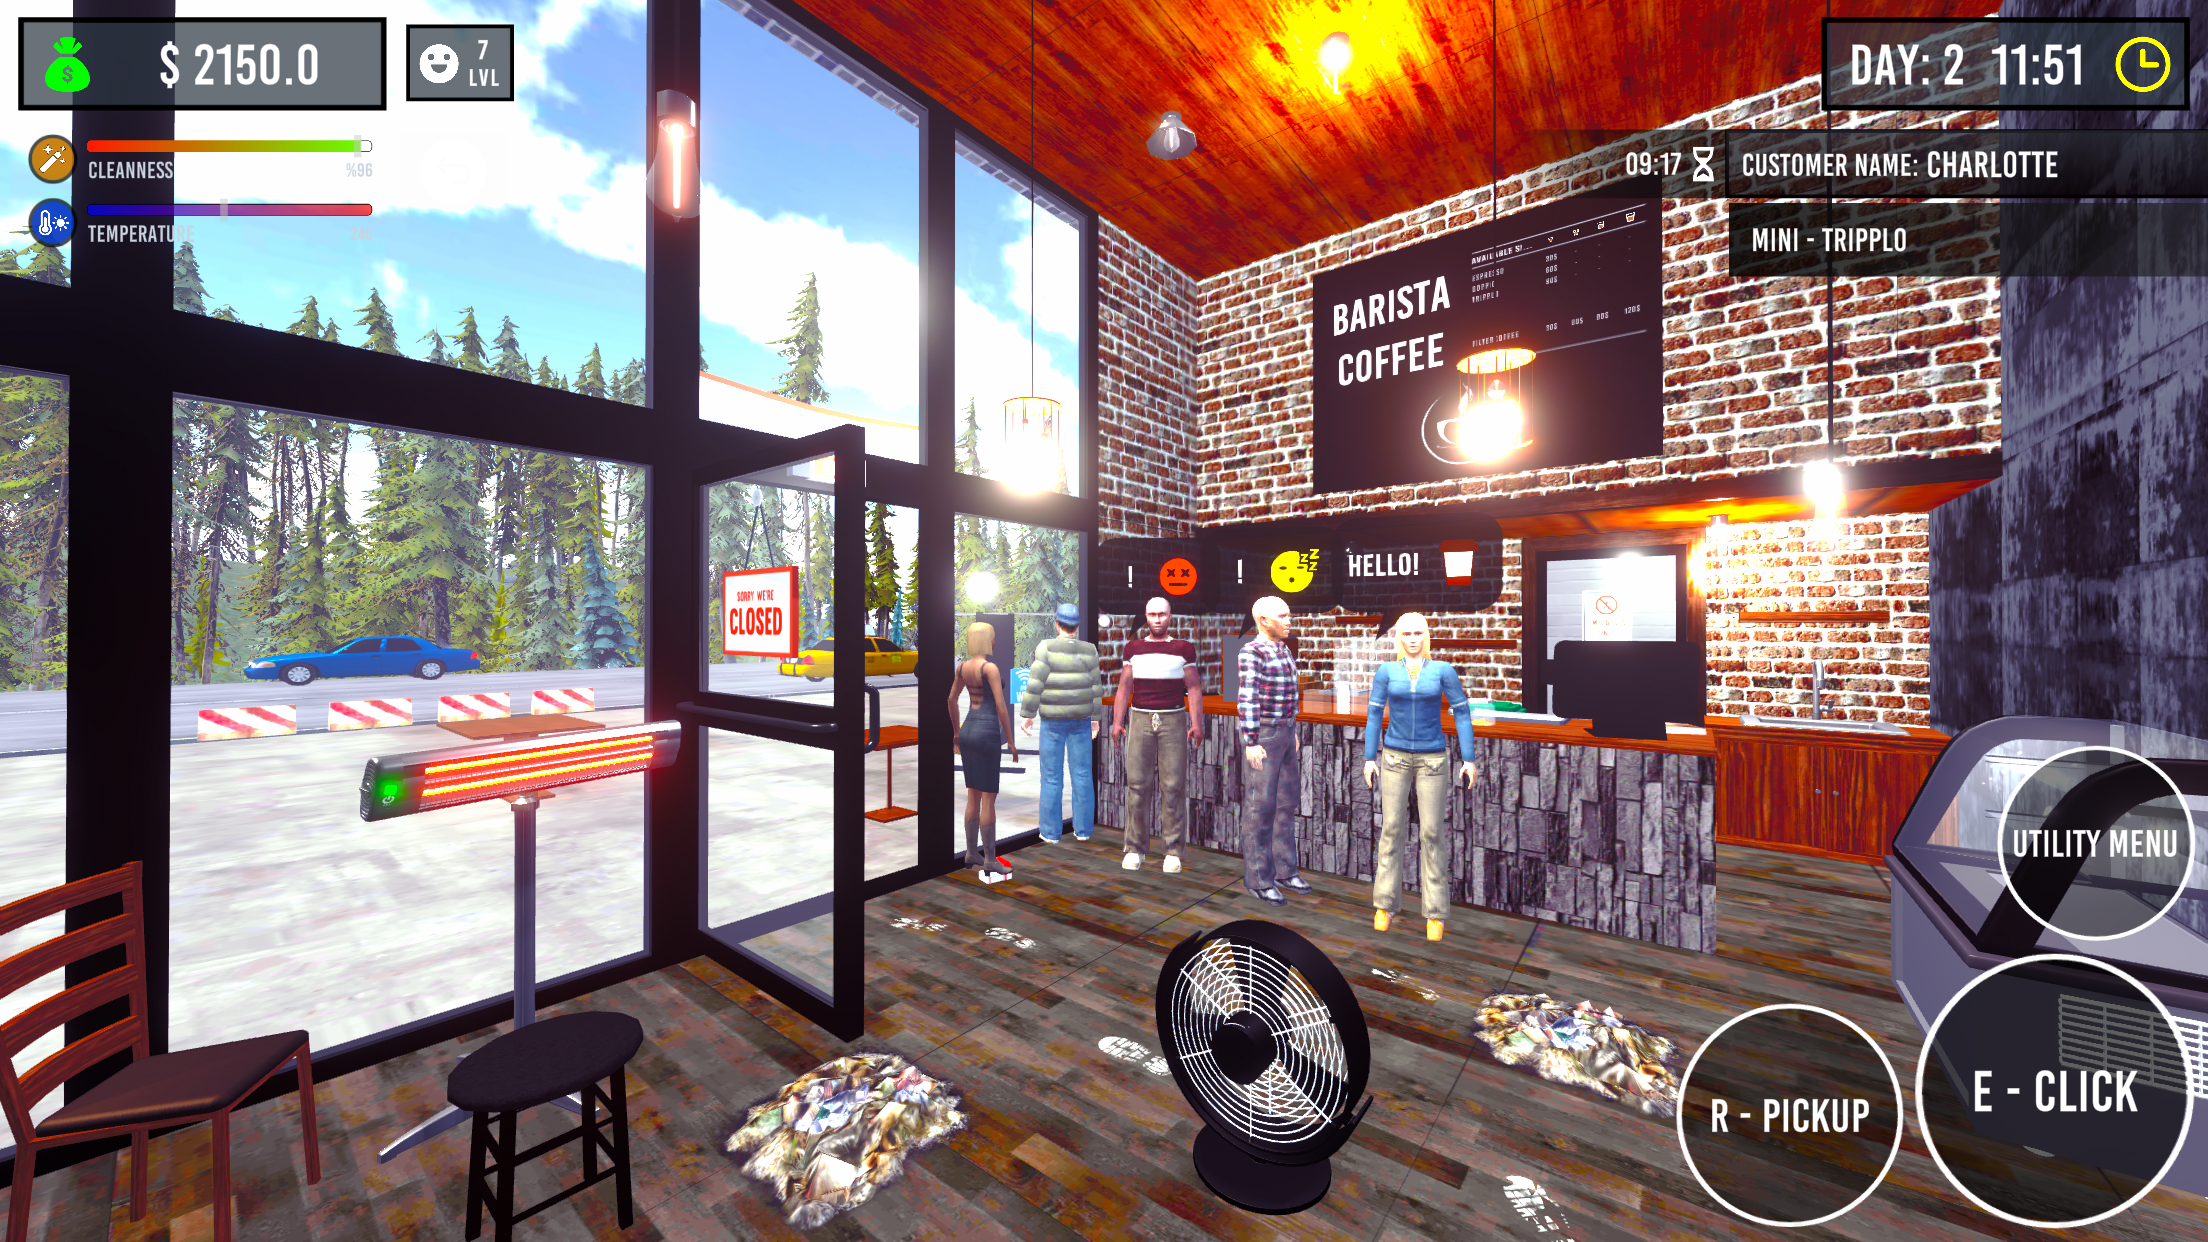 Barista Simulator 게임 스크린 샷